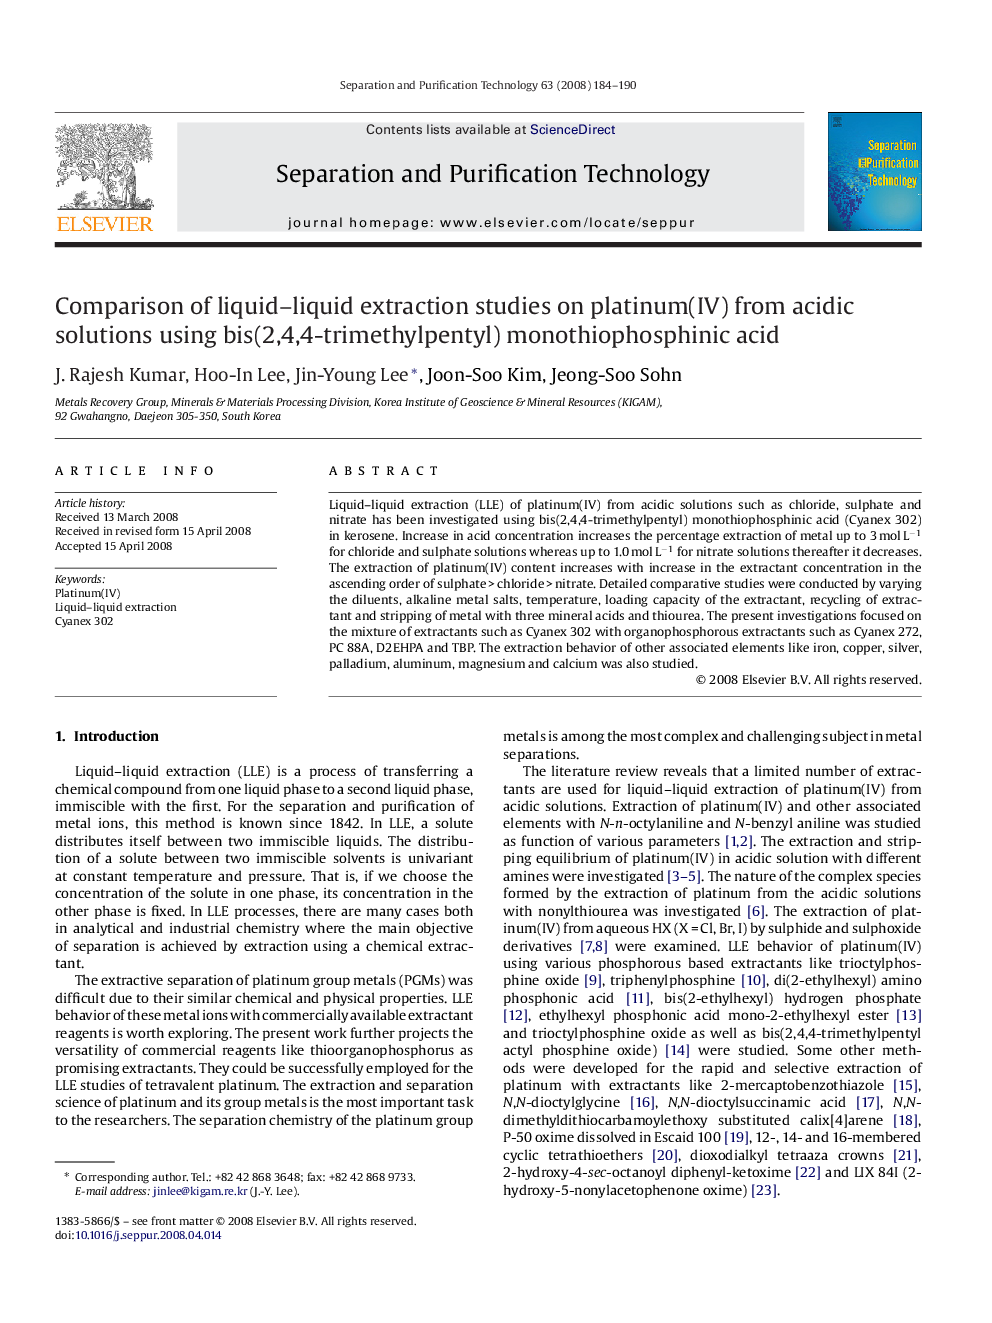 Comparison of liquid–liquid extraction studies on platinum(IV) from acidic solutions using bis(2,4,4-trimethylpentyl) monothiophosphinic acid